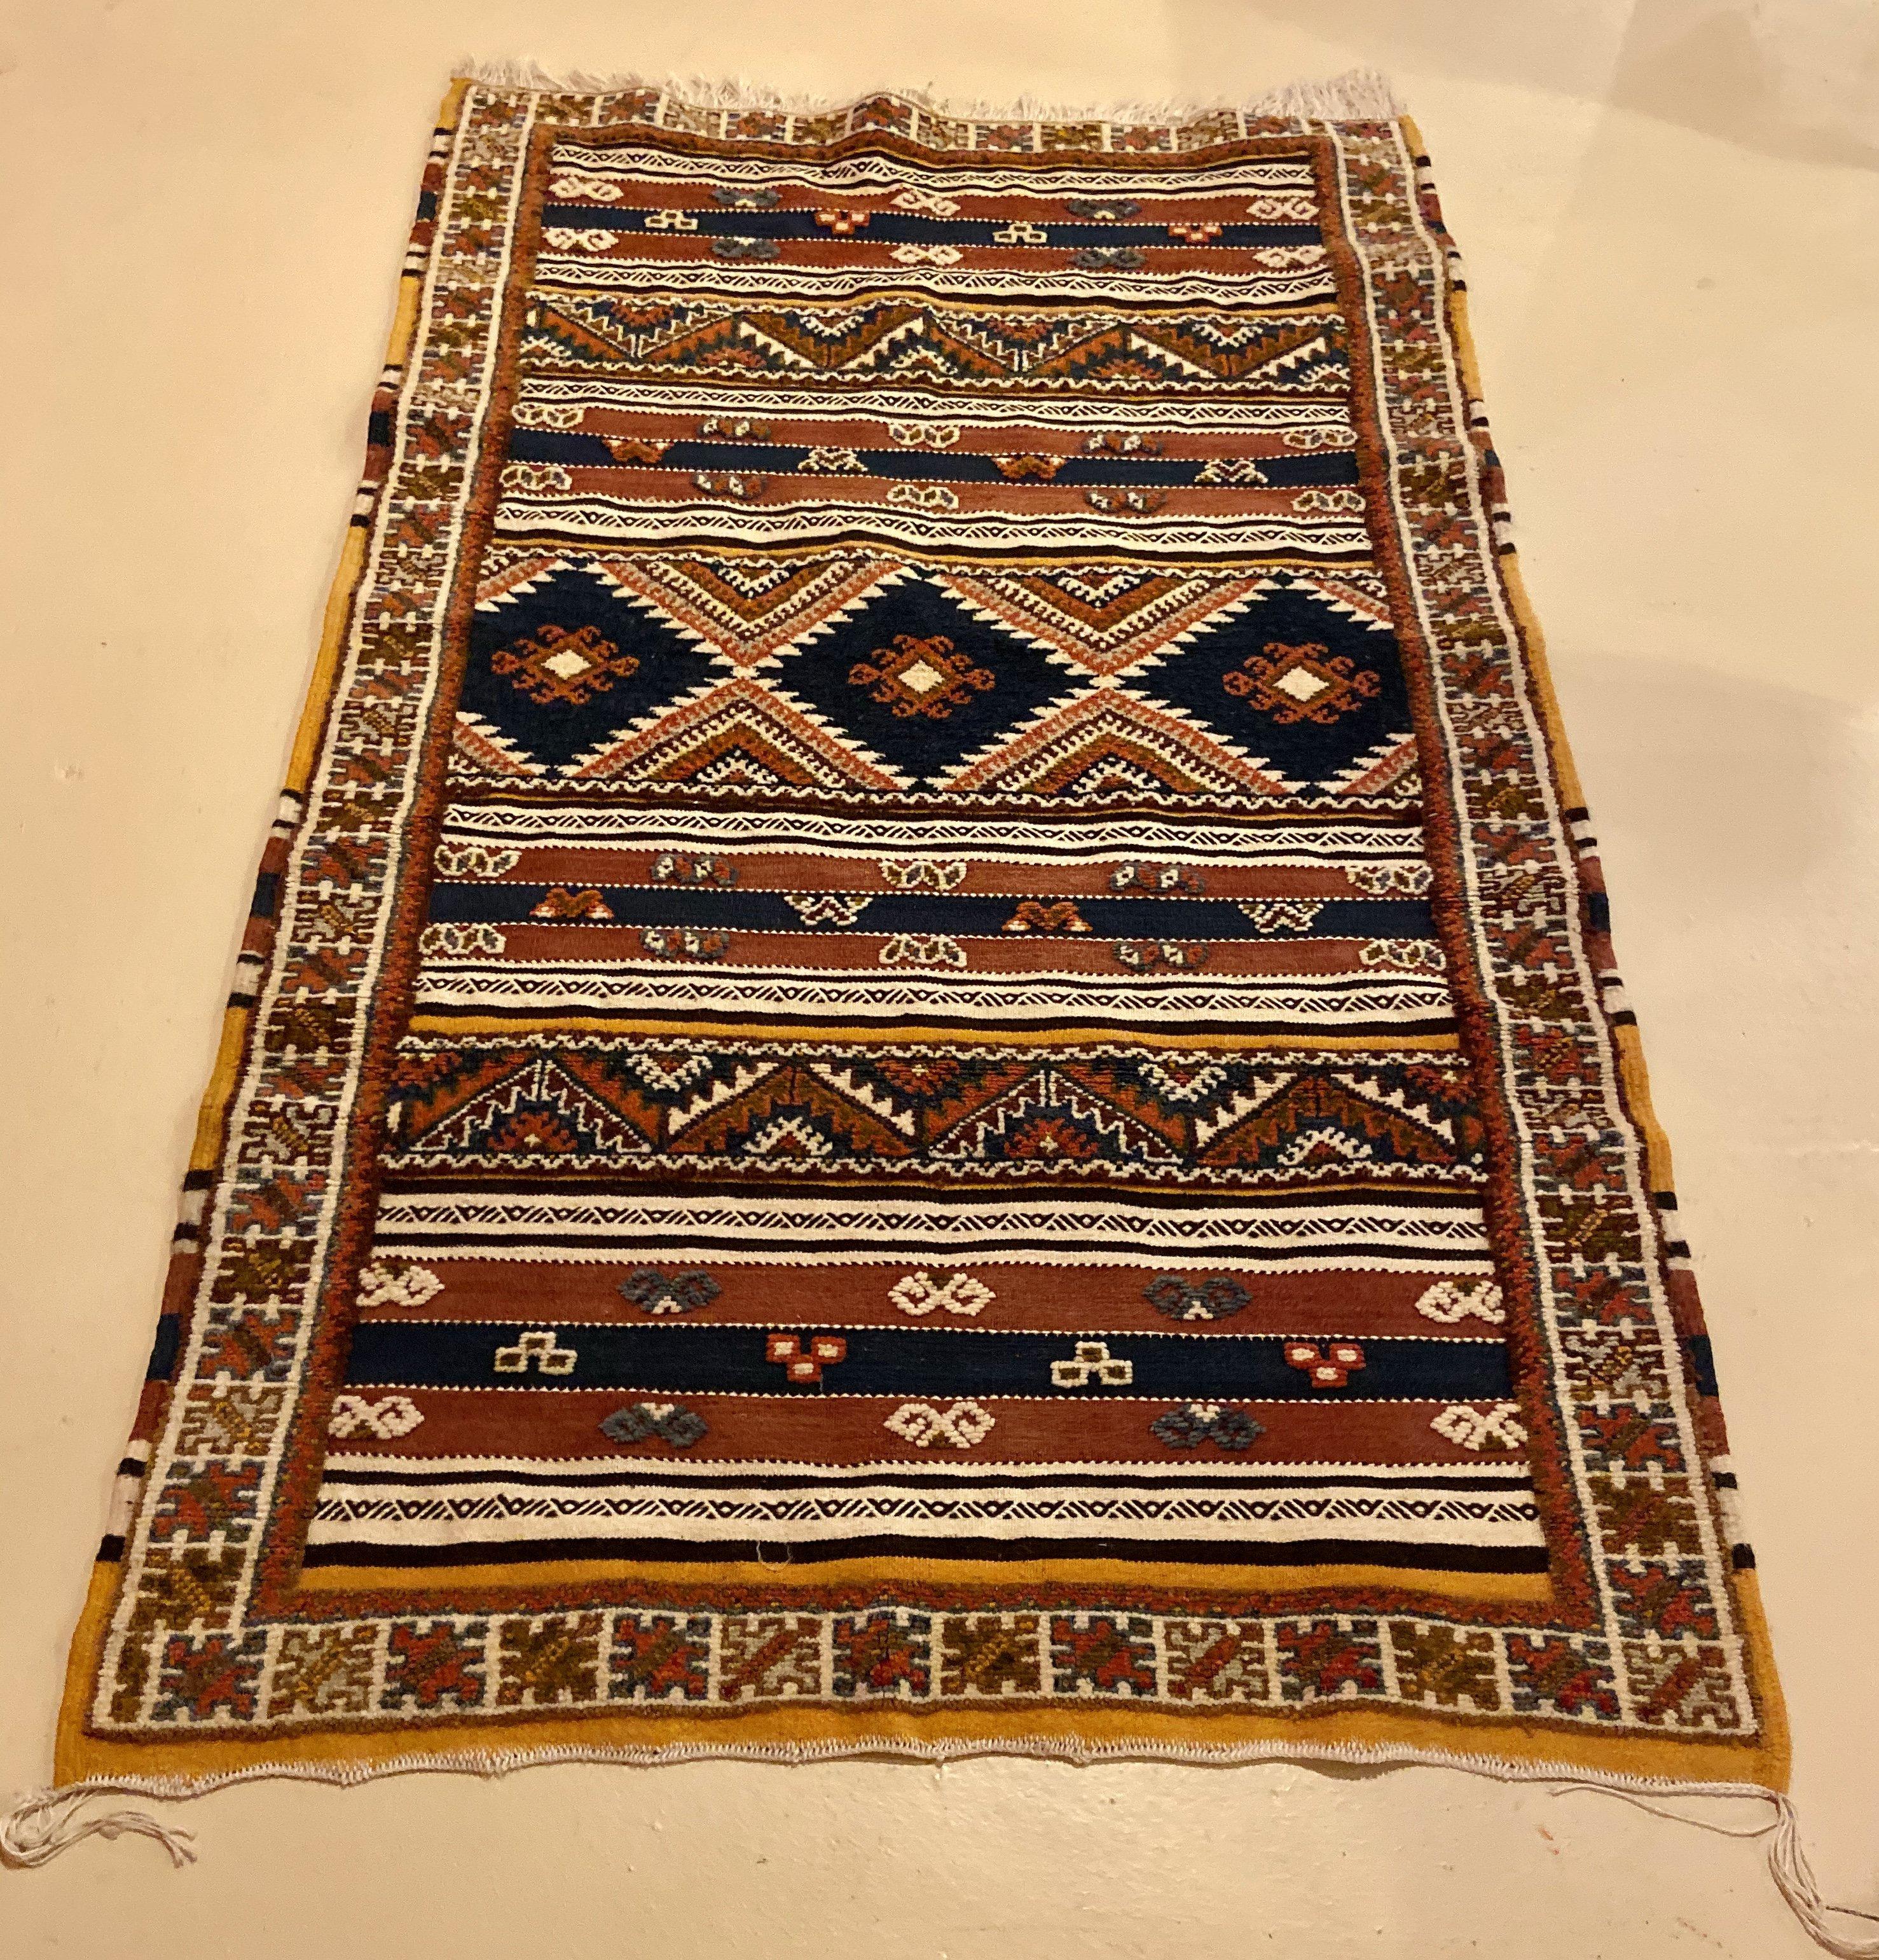 Dieser marokkanische Vintage-Stammesteppich ist eine atemberaubende und anspruchsvolle Ergänzung für Ihr Wohnzimmer, Esszimmer, Eingangsbereich oder Schlafzimmer. Dieser Teppich und sein exquisites, fesselndes Muster werden nie aus der Mode kommen.